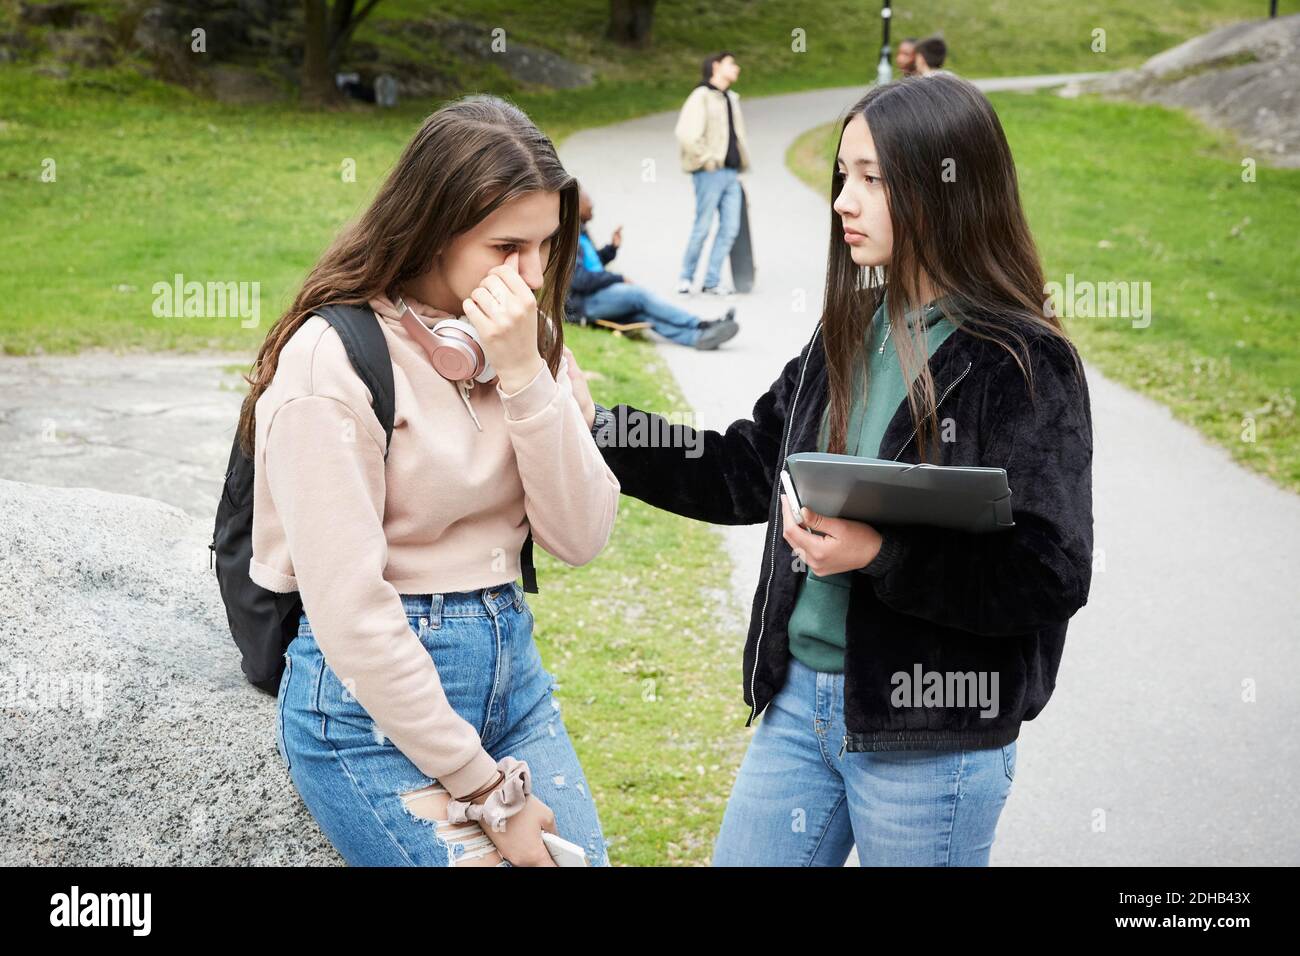 Una adolescente mirando a una amiga llorando mientras estaba sentada roca en el parque Foto de stock